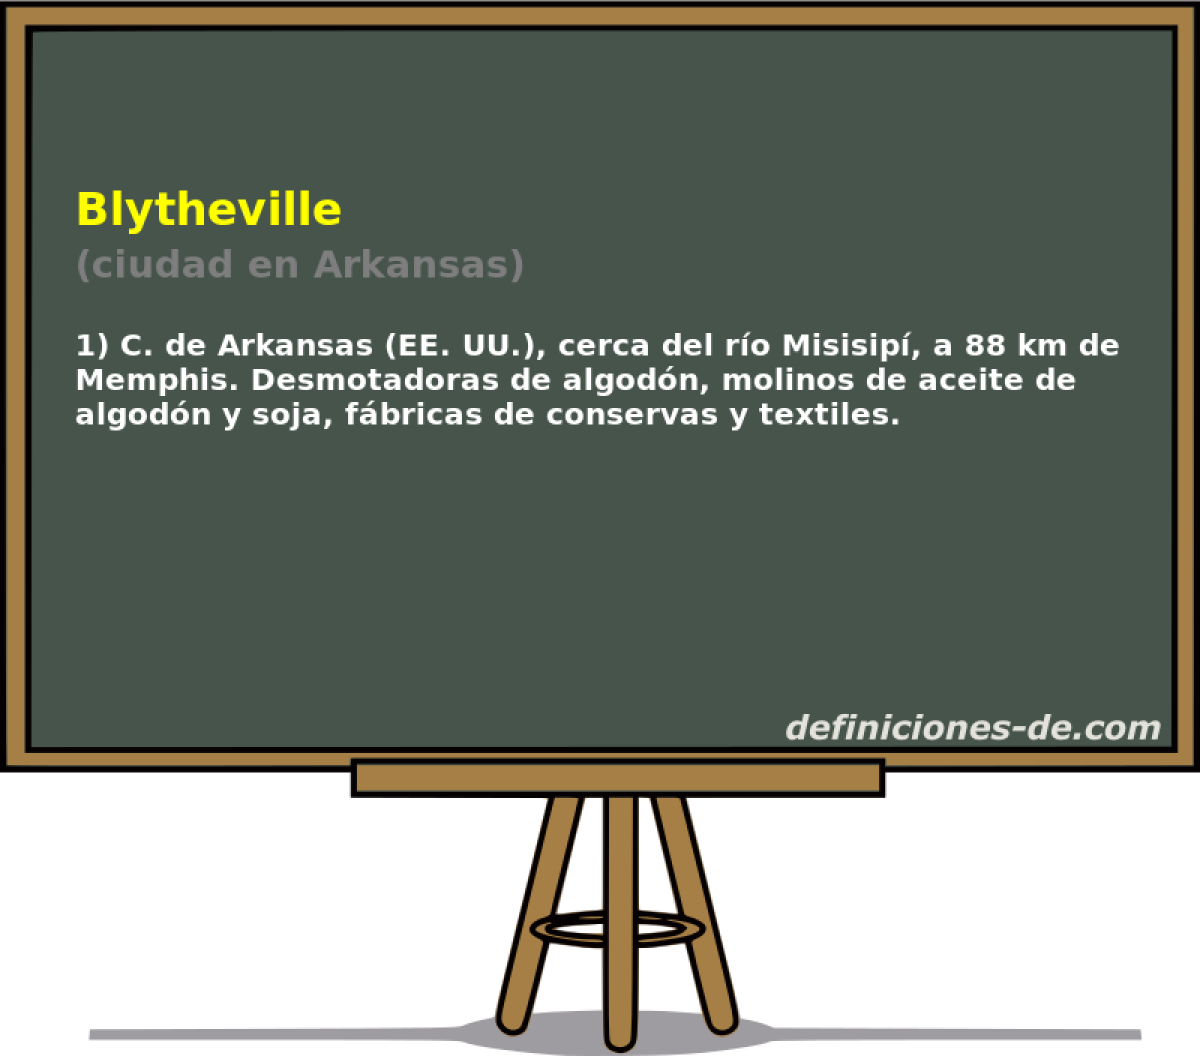 Blytheville (ciudad en Arkansas)